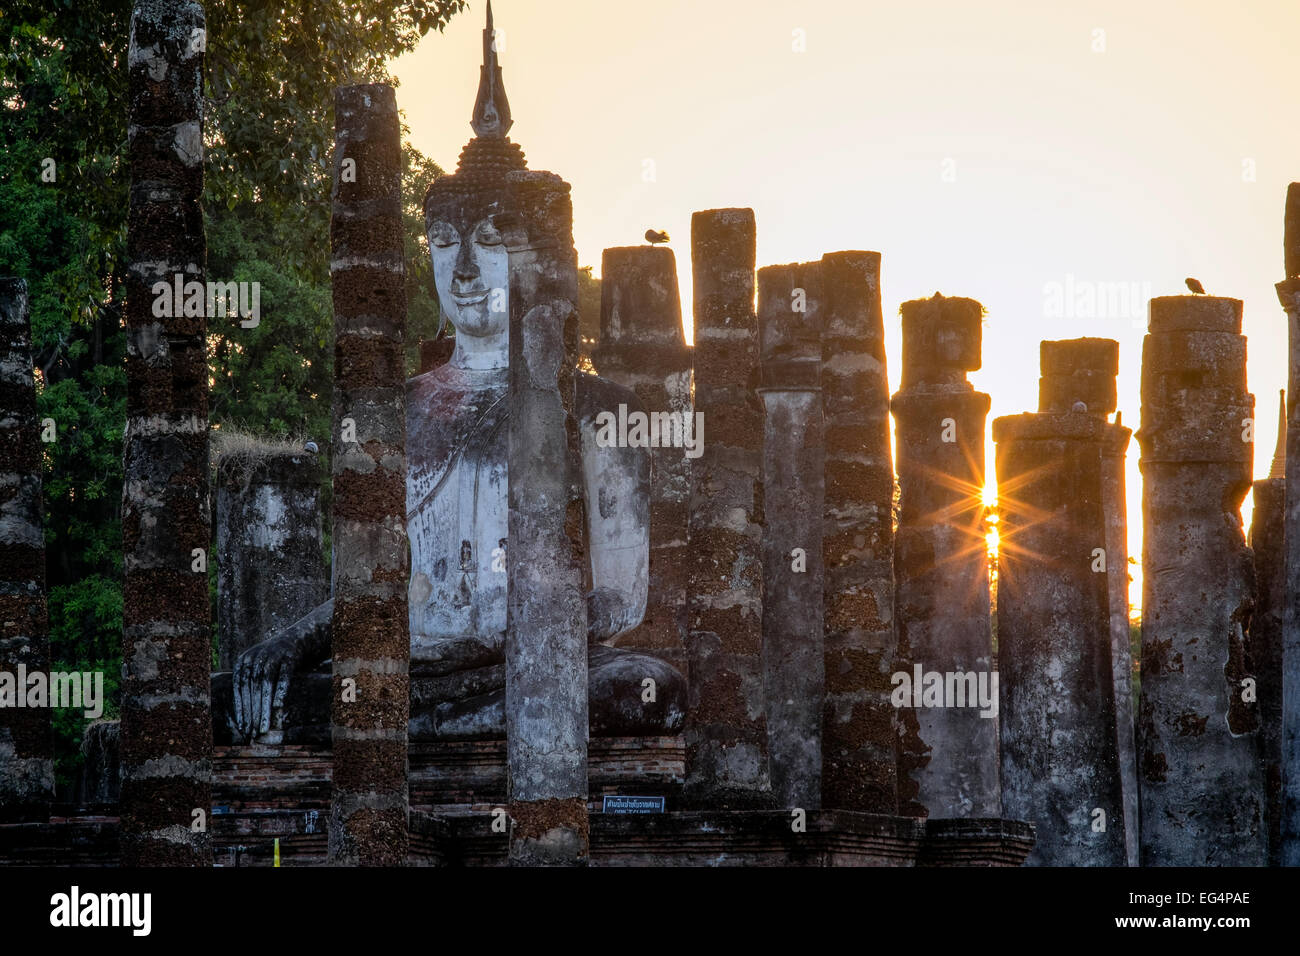 L'Asie. La Thaïlande, l'ancienne capitale du Siam. Parc archéologique de Sukhothai, classé au Patrimoine Mondial de l'UNESCO. Wat Mahathat. Statue de Bouddha Banque D'Images